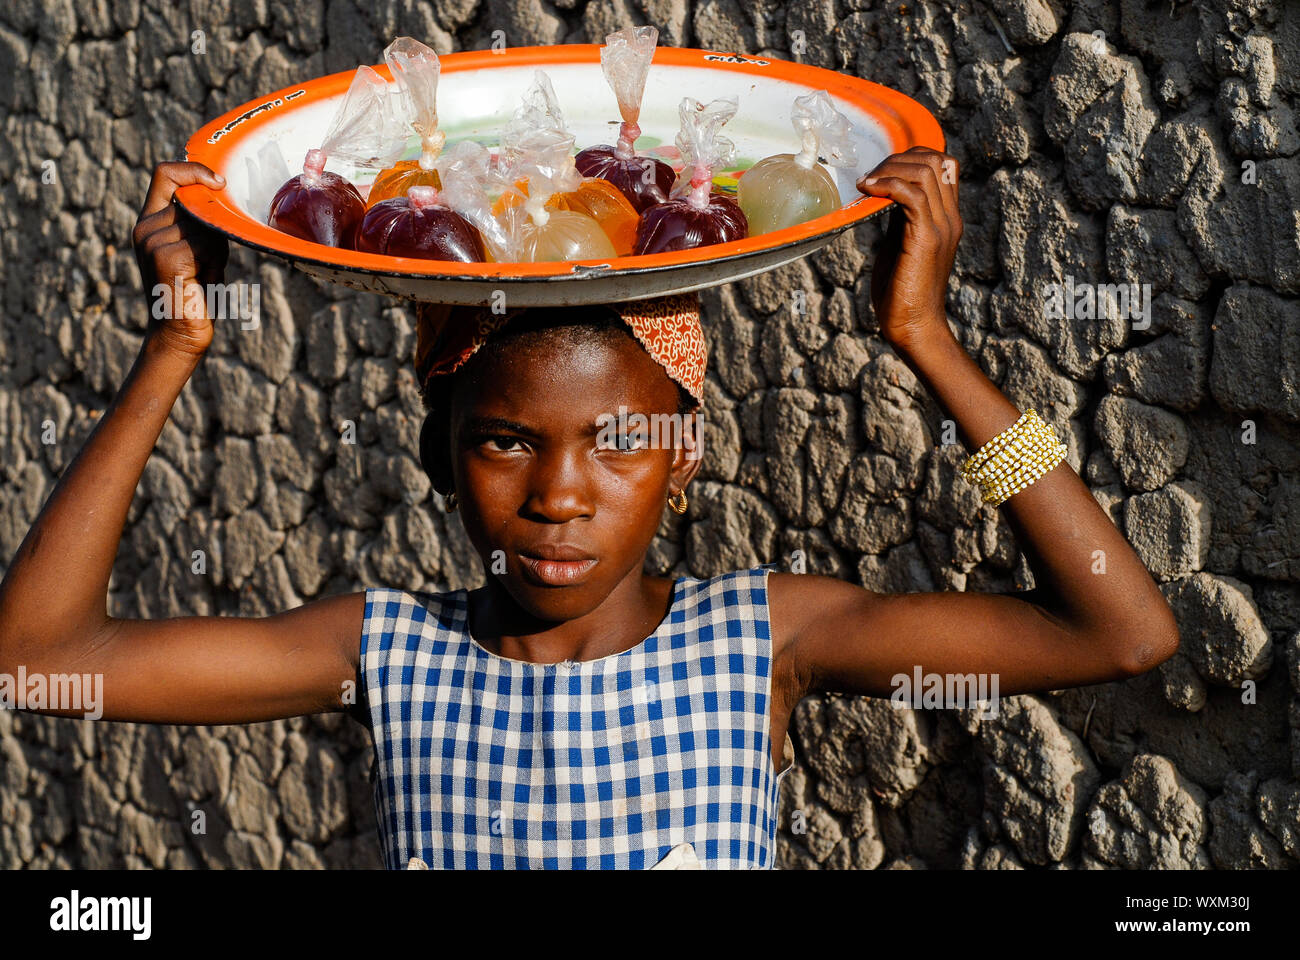 MALI, village Faragouaran , girl sells lemonade in plastic bags on the market / Markt im Dorf Faragouaran, Maedchen verkauft Lemonade in Plastiktueten auf dem Markt um Einkommen zu erzielen Stock Photo